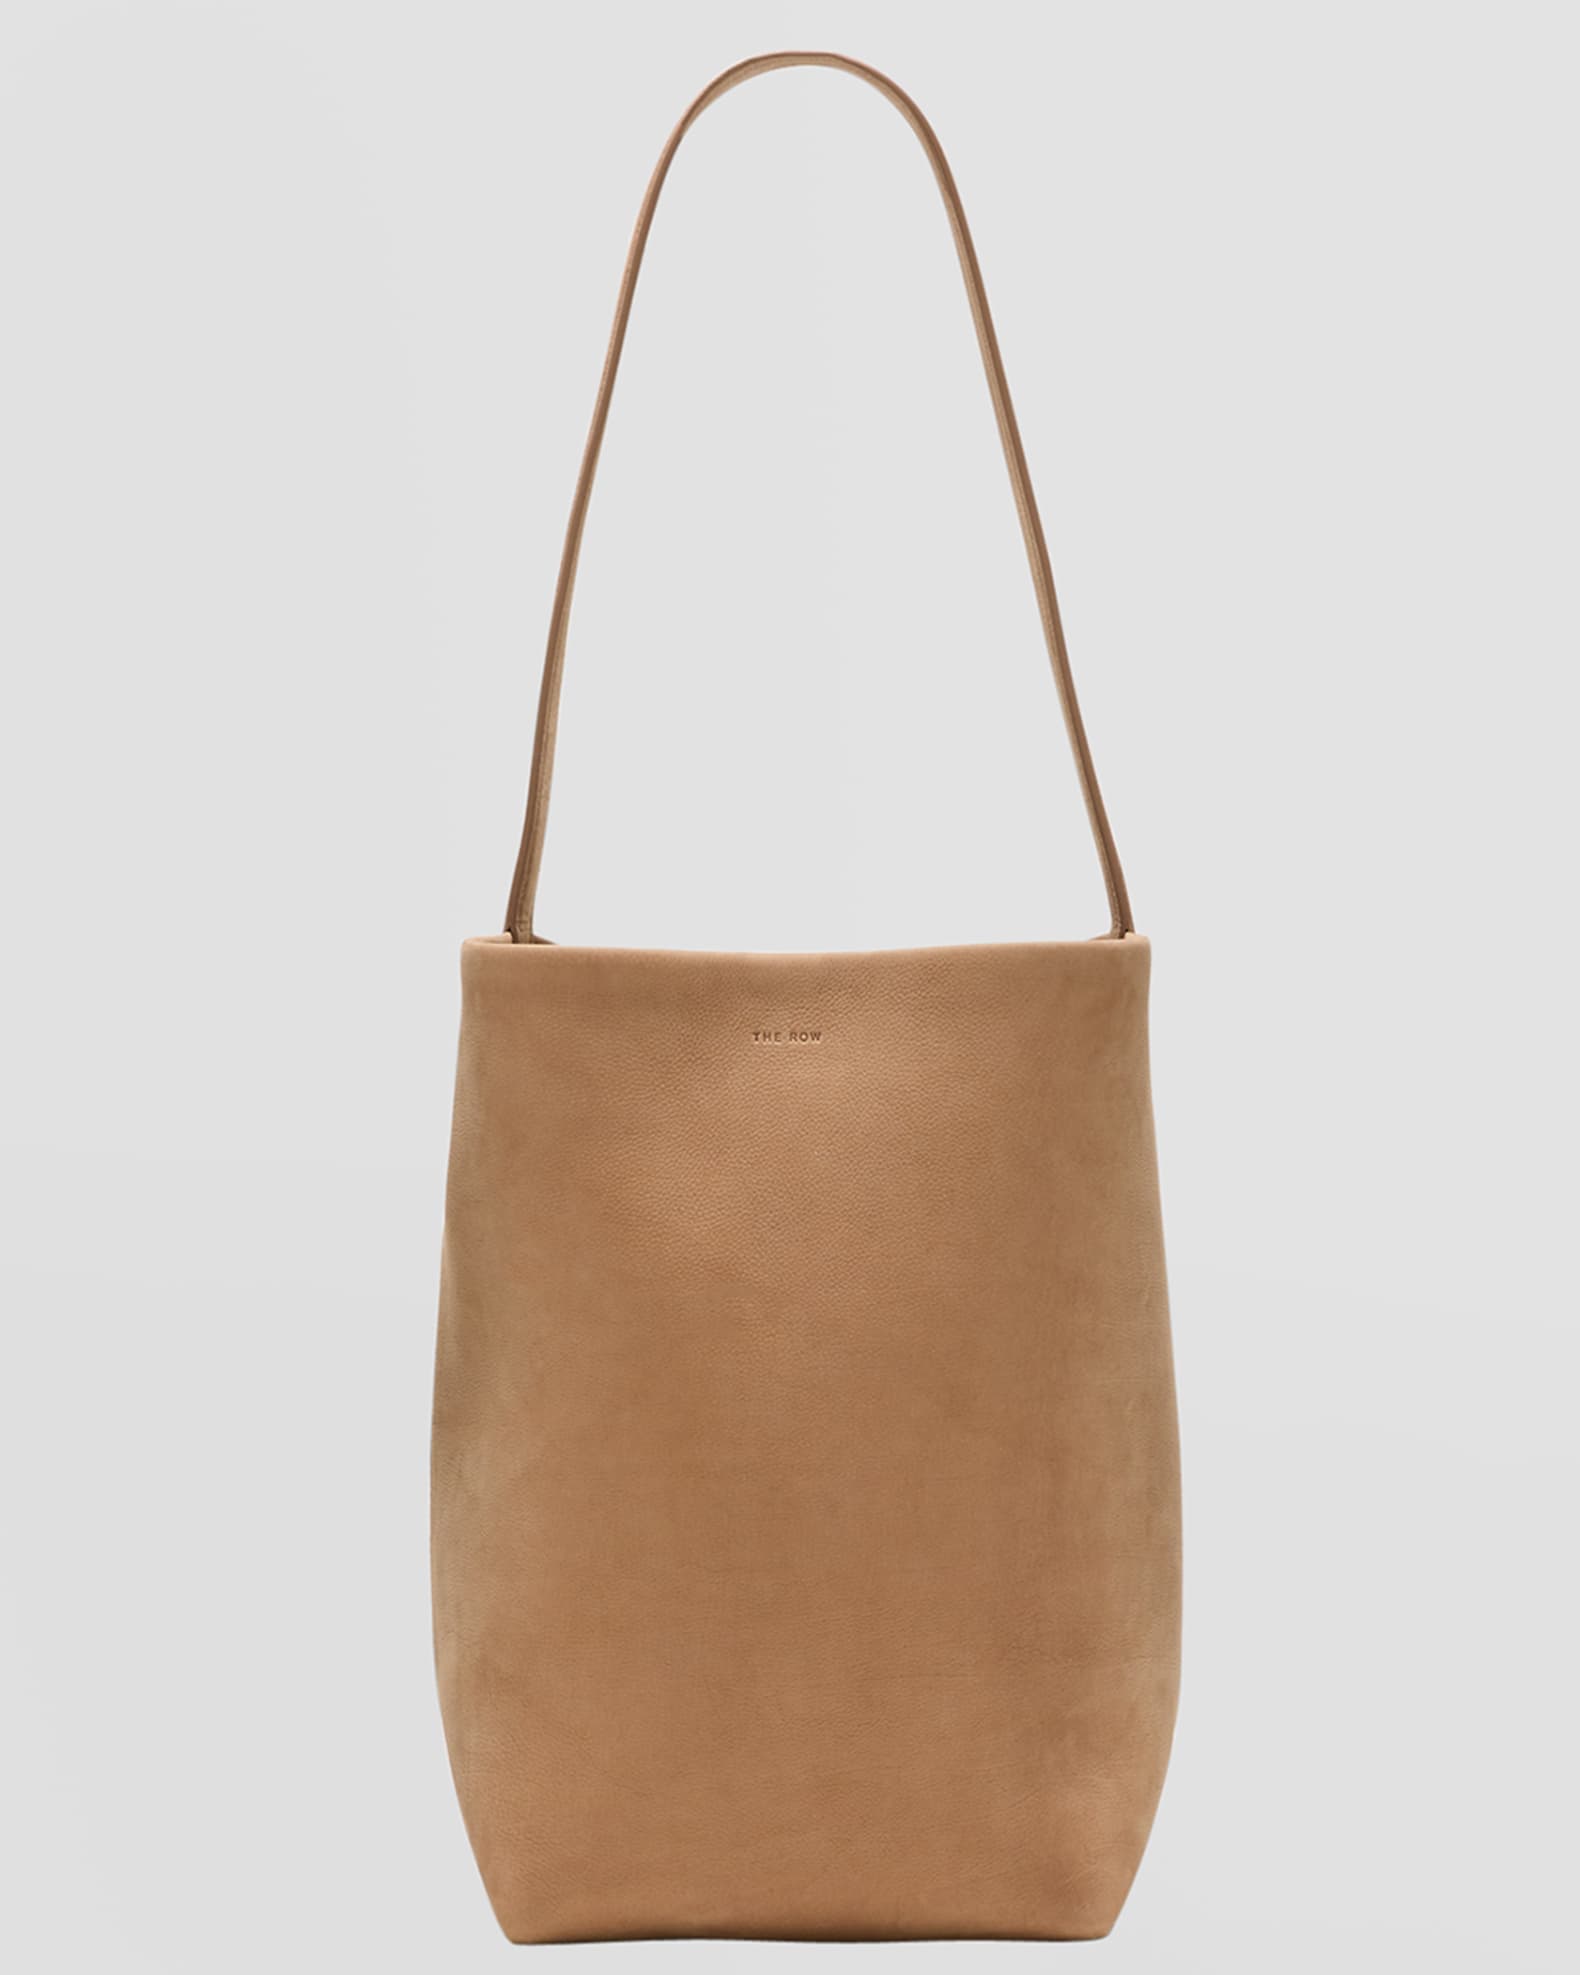 Park Medium Tote Bag in Nubuck Leather | Neiman Marcus